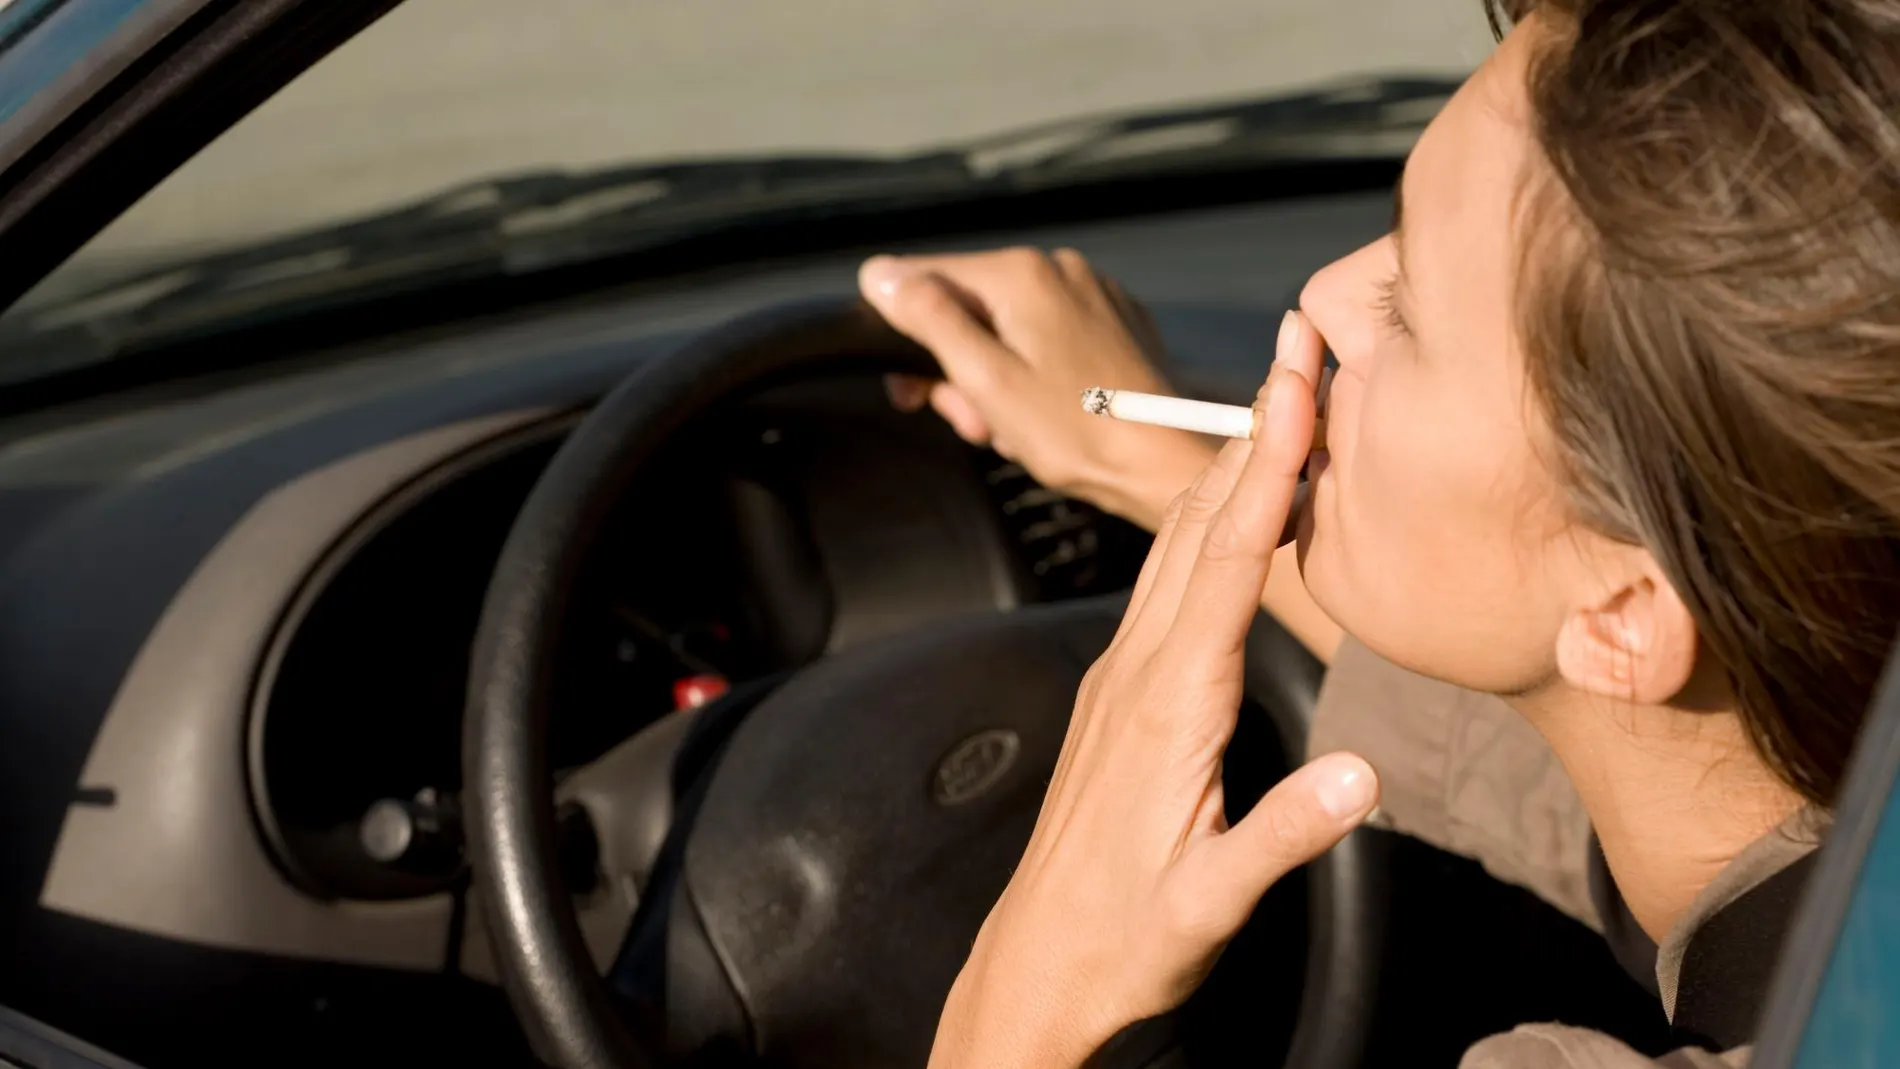 Tráfico no se plantea prohibir que se fume en los coches, aunque reconoce que es "peligrosísimo"